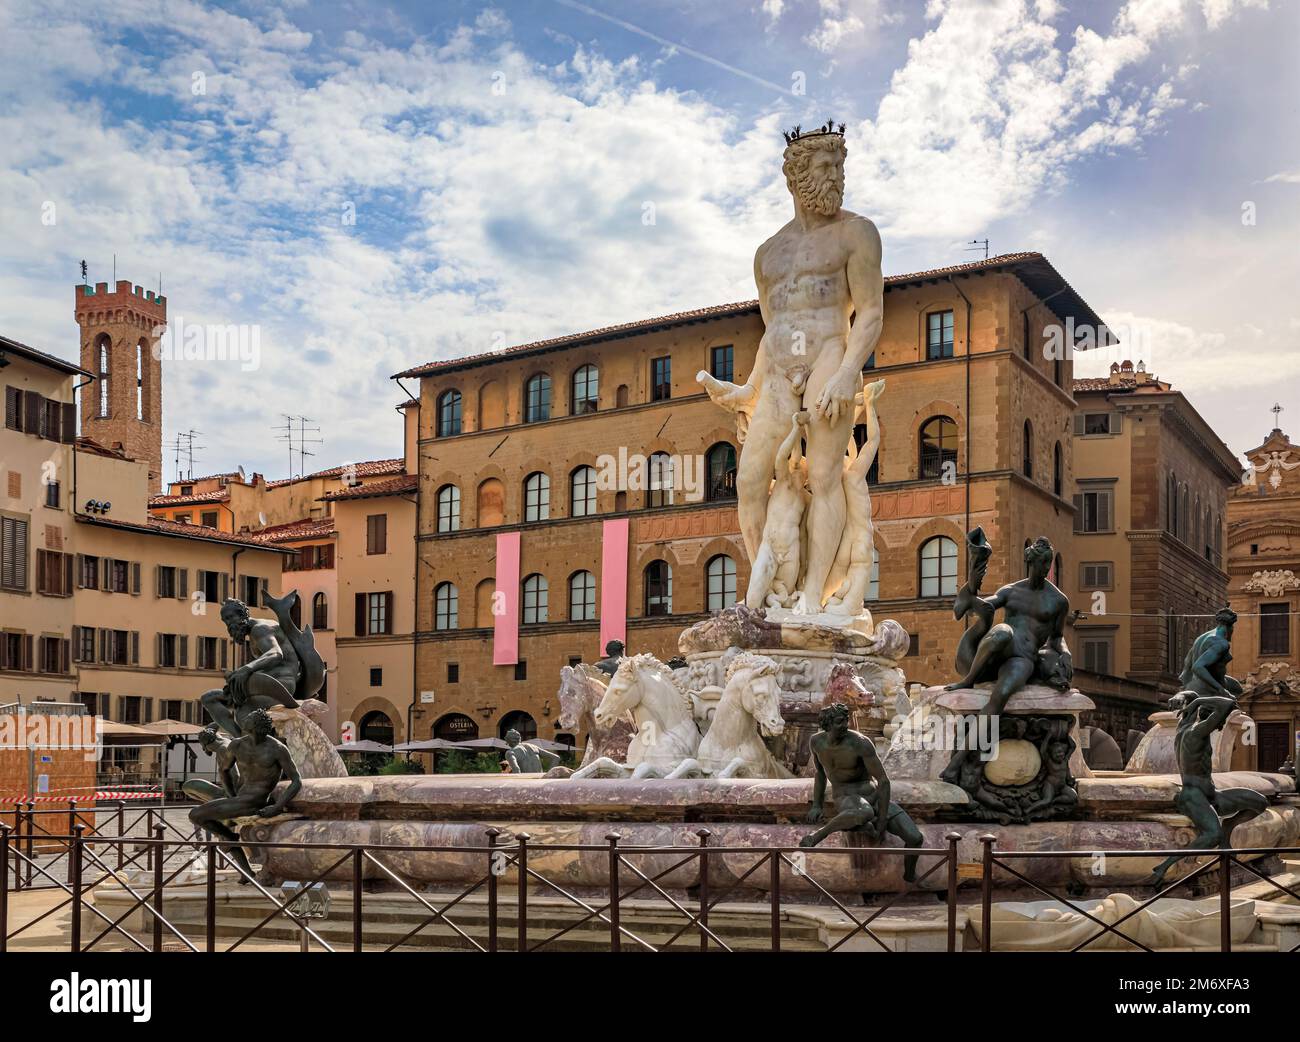 Fountain of Neptune on Fontana del Nettuno in front of Palazzo Vecchio on public Square Piazza della Signoria, Florence, Italy Stock Photo